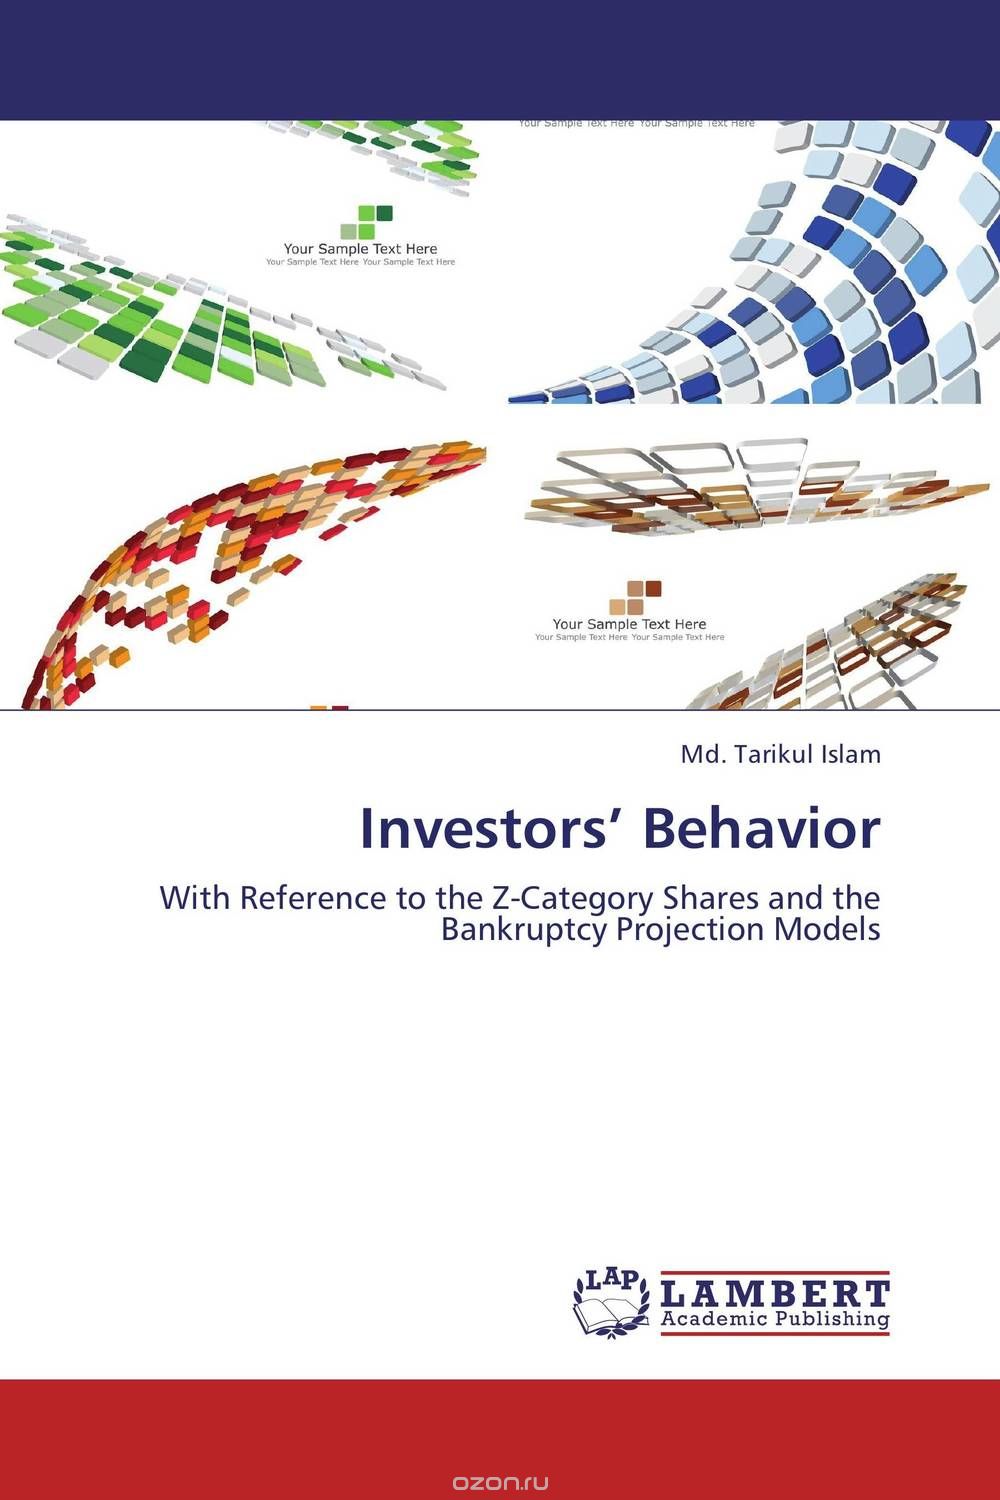 Скачать книгу "Investors’ Behavior"